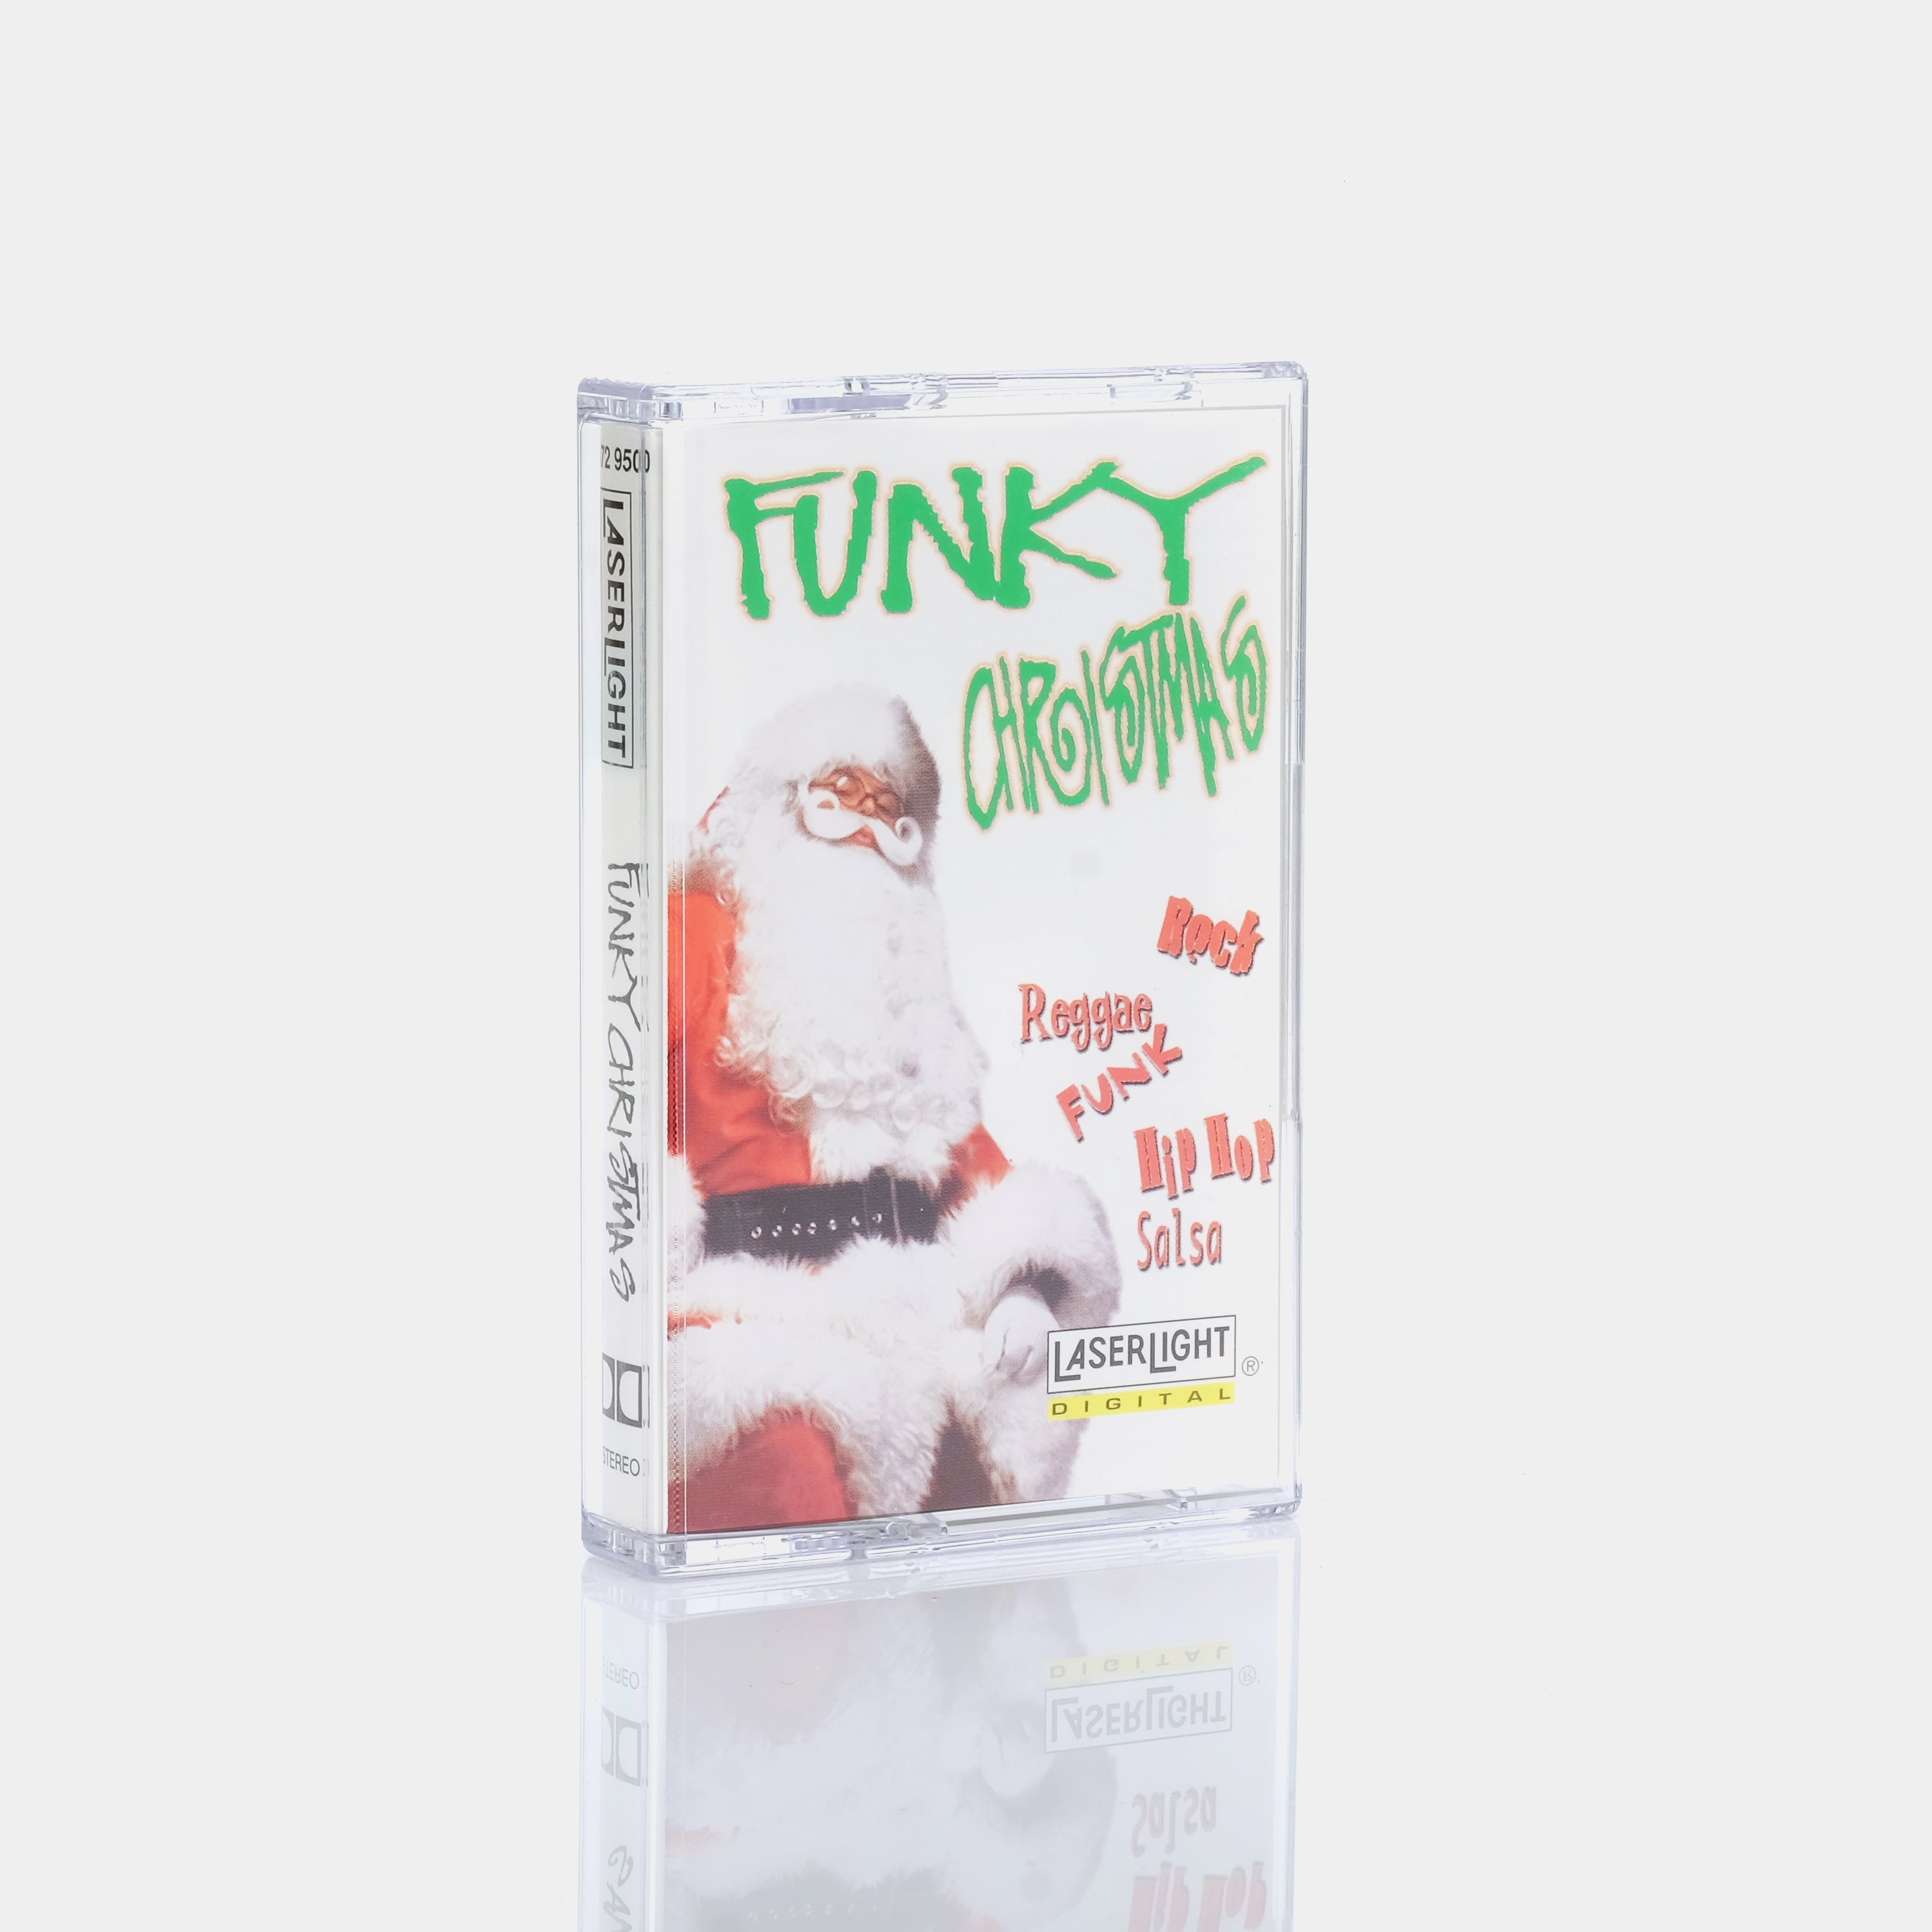 Funky Christmas Cassette Tape